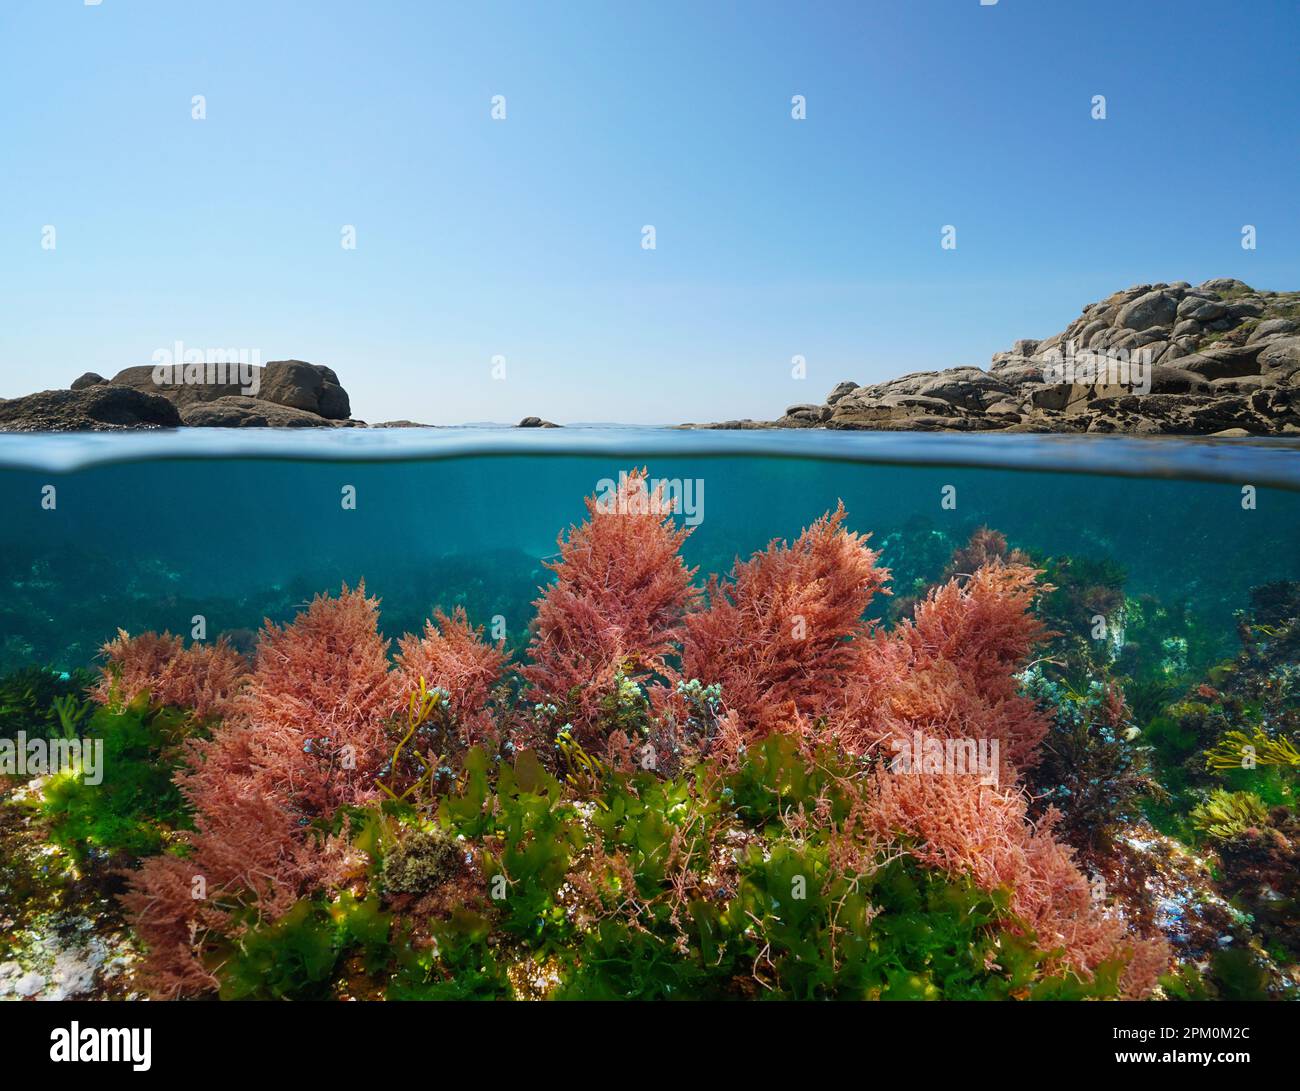 Meereslandschaft, Meeresalgen unter Wasser und Felsen mit blauem Himmel, geteilte Sicht über und unter der Wasseroberfläche, Ostatlantik, Spanien, Galicien Stockfoto